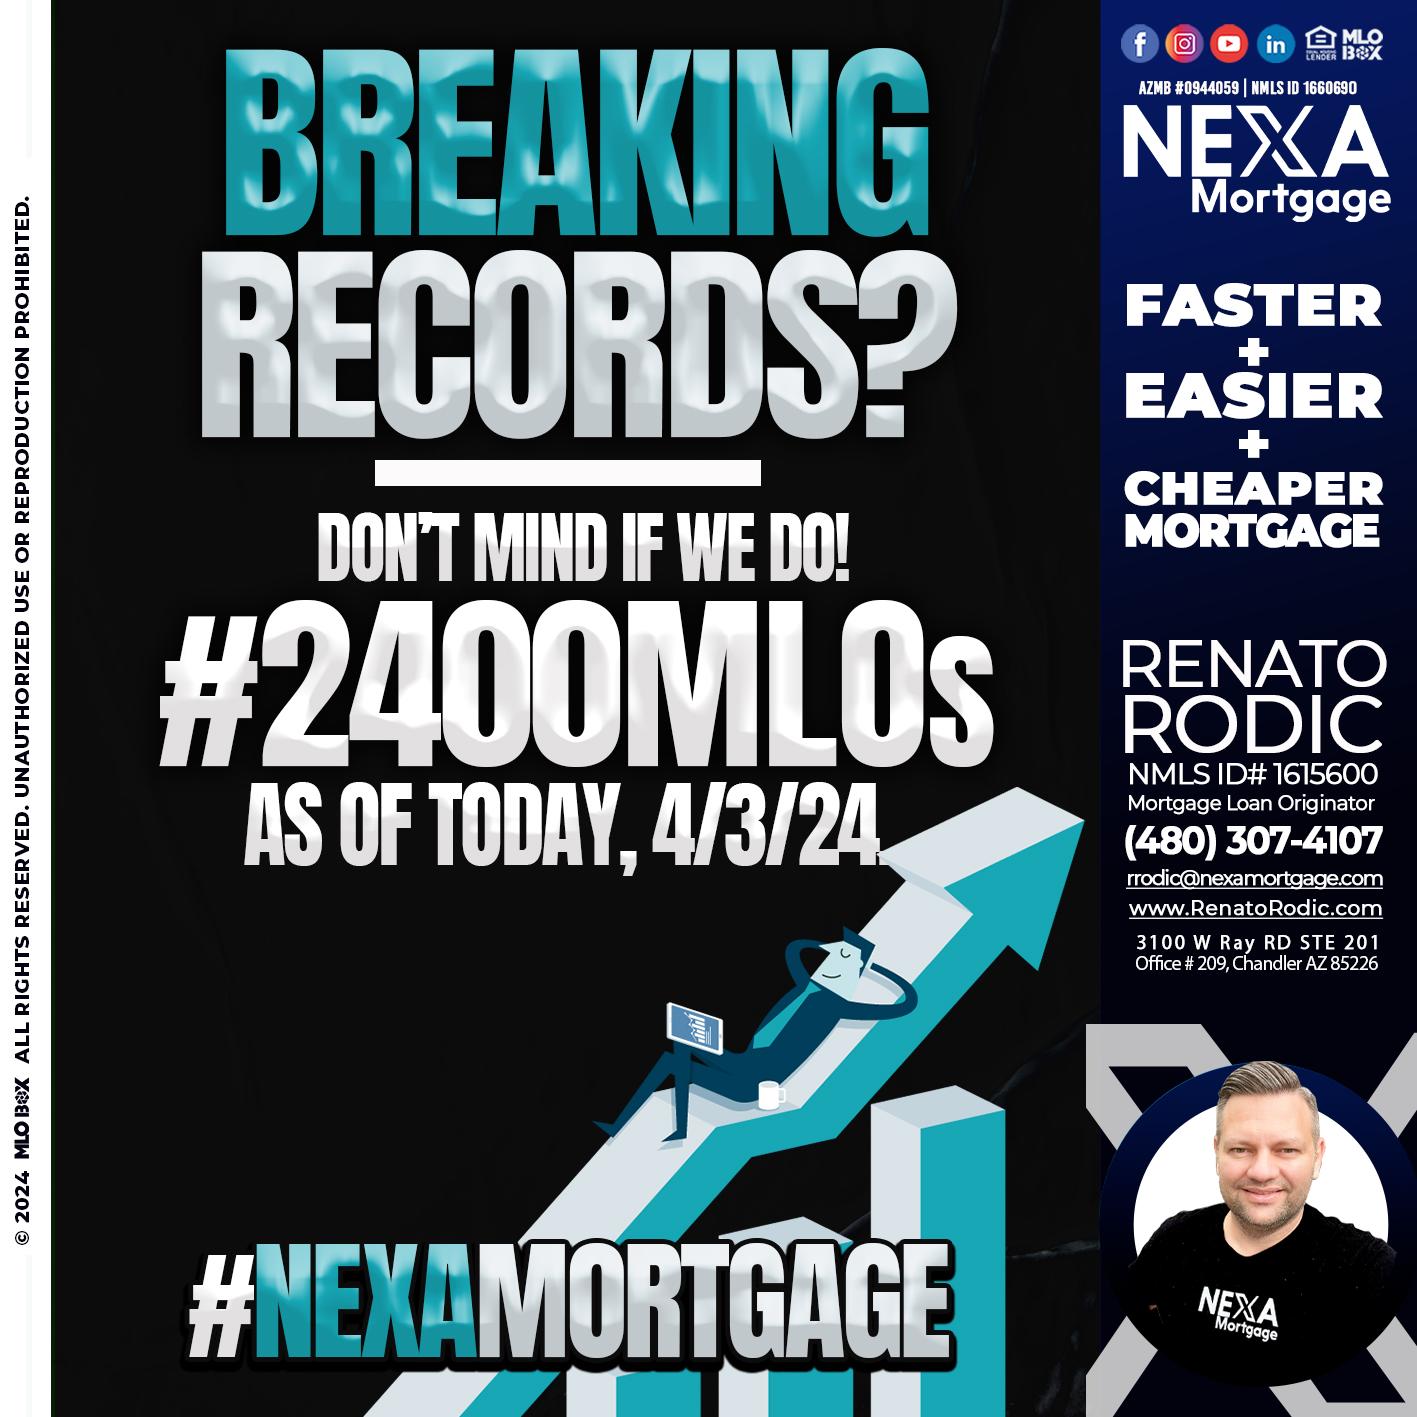 breaking reacords - Renato Rodic -Mortgage Loan Originator